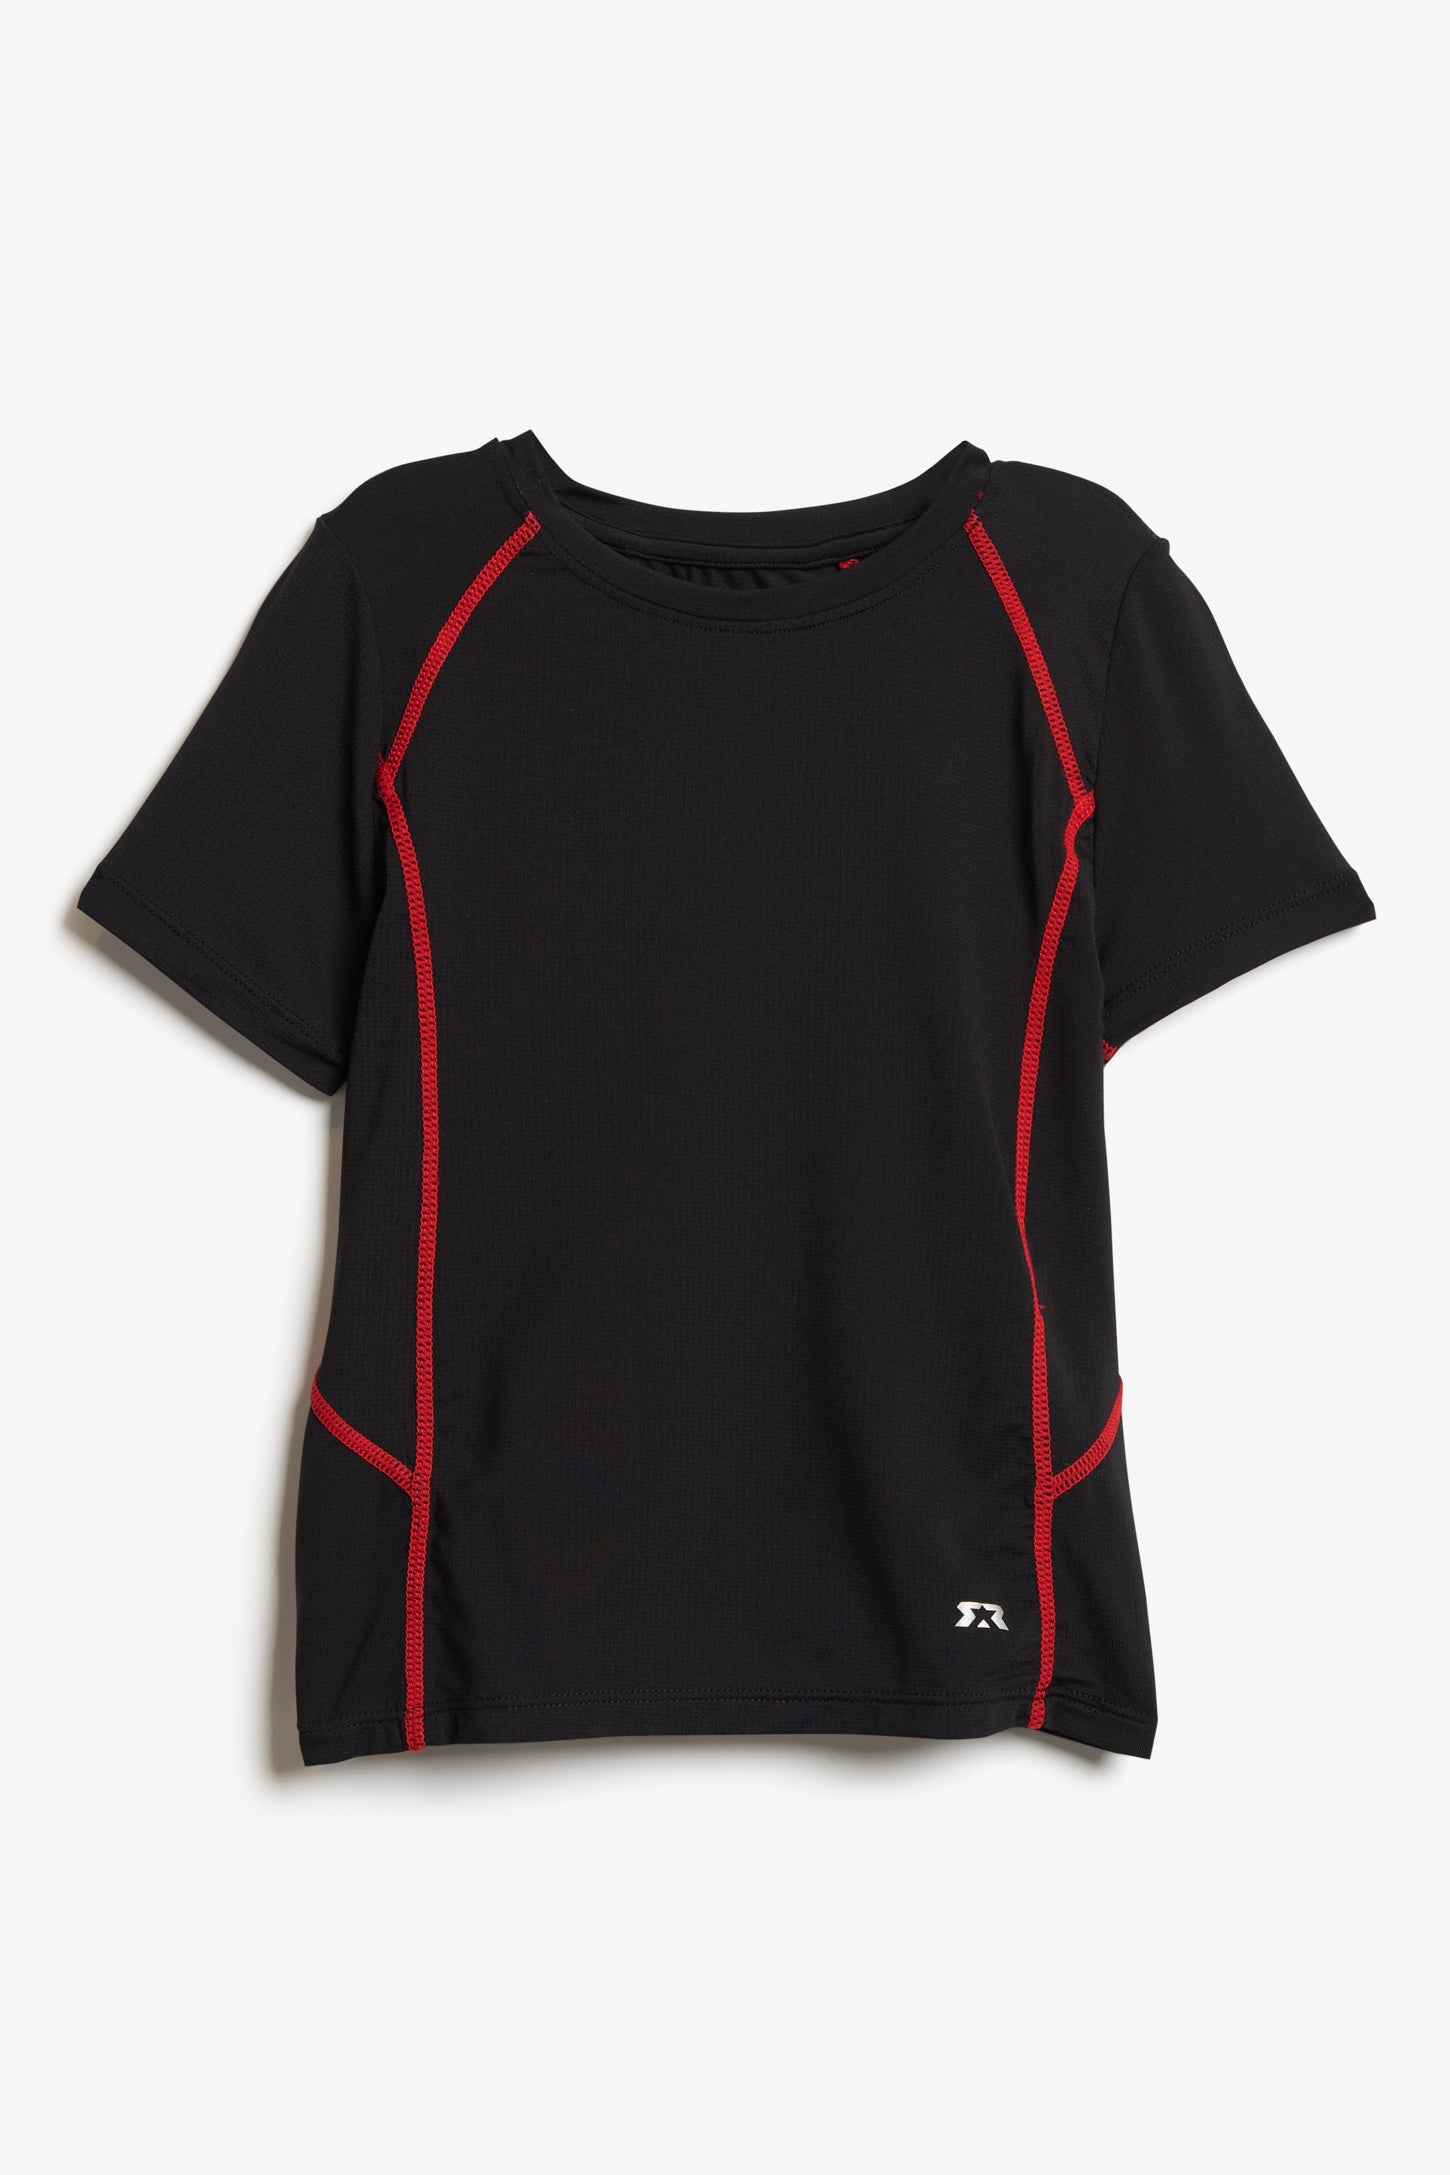 T-shirt HR en microfibres, 2/20$ - Enfant garçon && NOIR